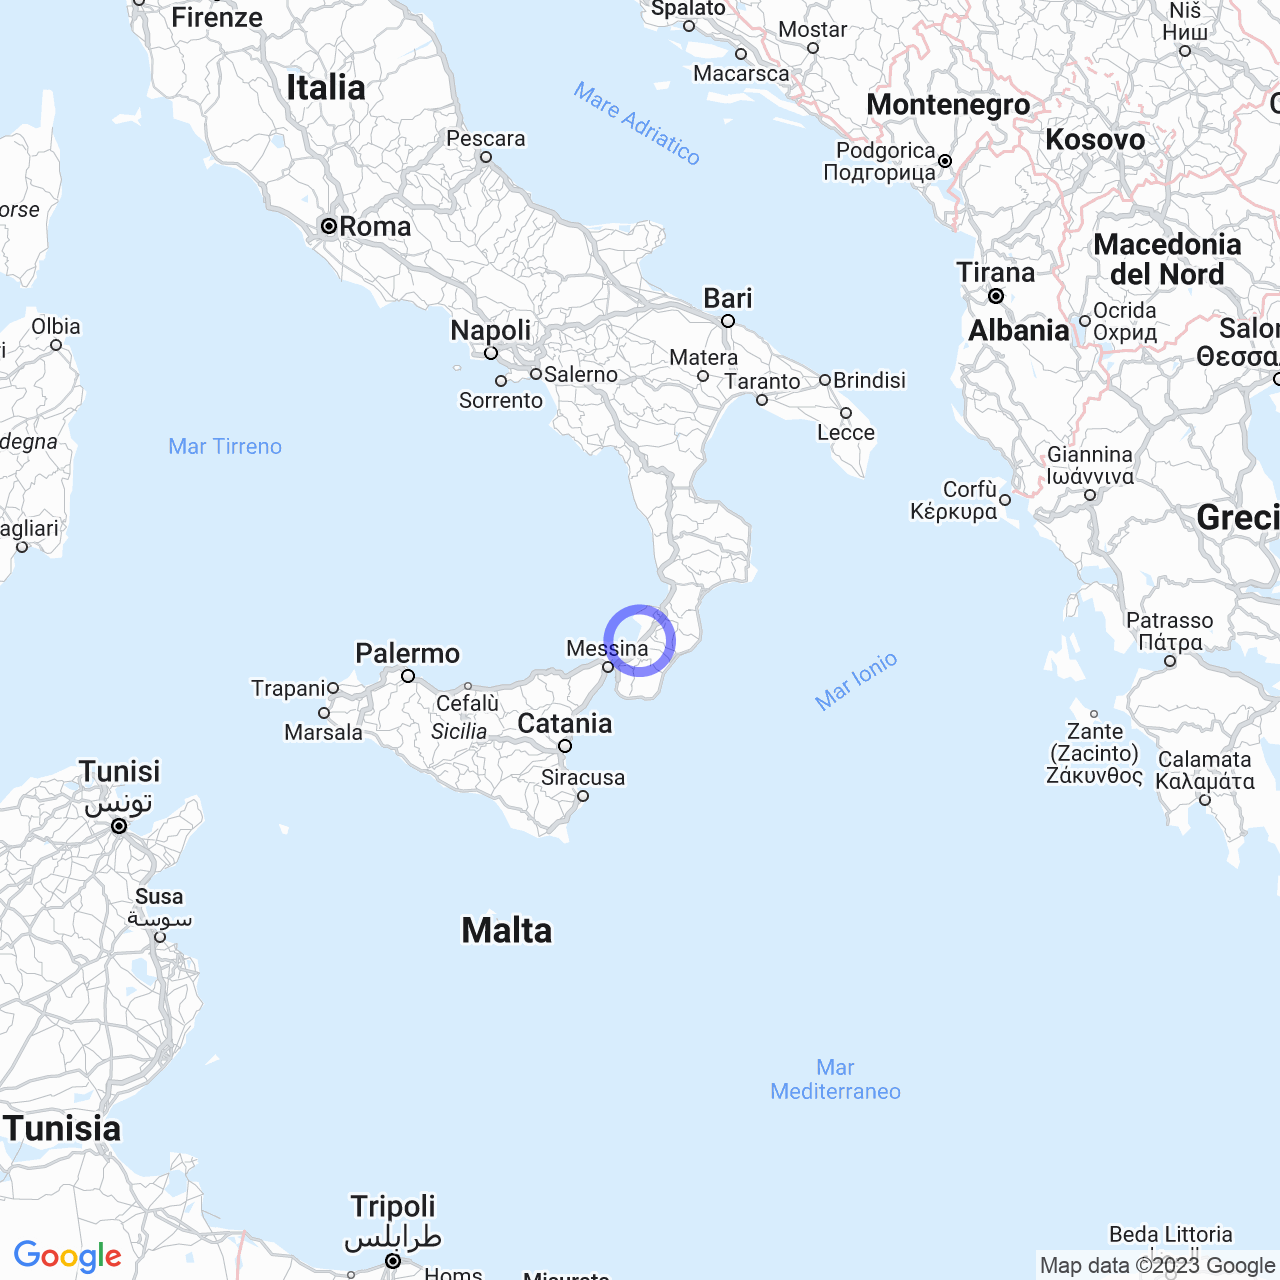 Gioia Tauro: Perla della Calabria tra mare e montagna